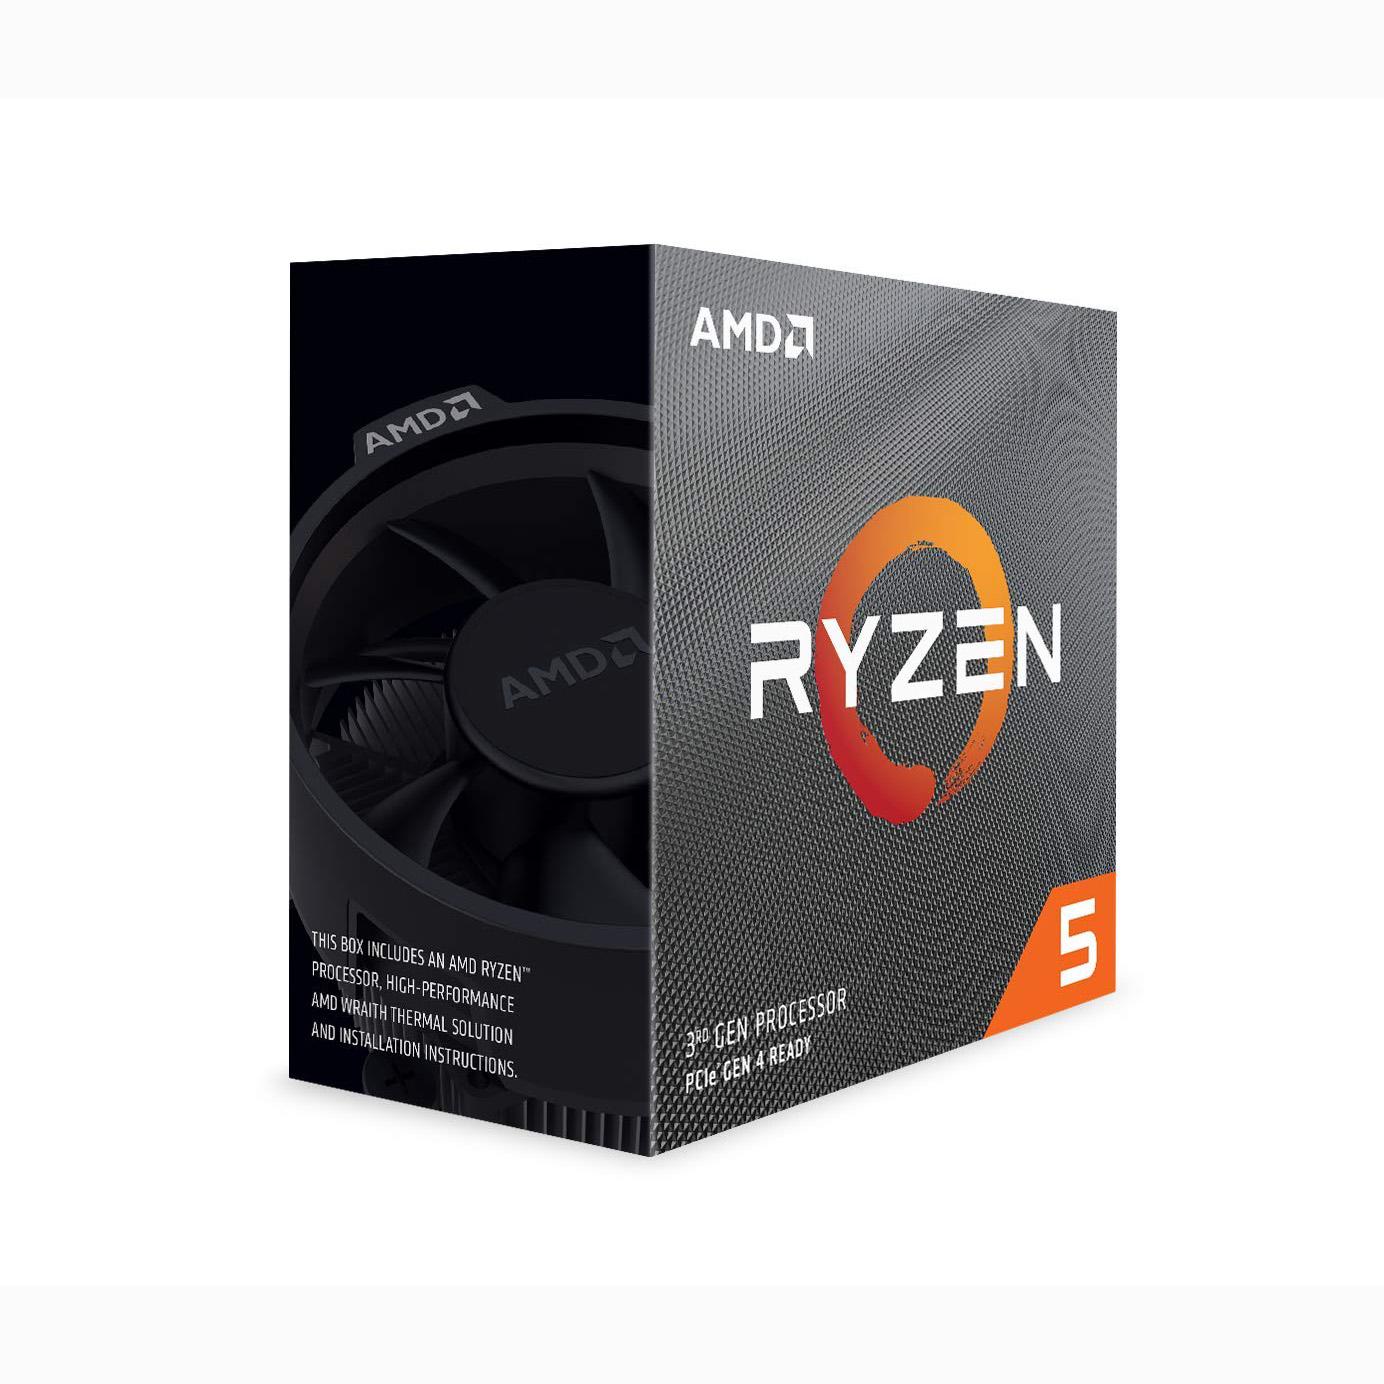 CPU AMD RYZEN 5 3600,AM4,6C/12T 3.6 UP TO 4.2GHZ 32MB CACHE 65W,TSMC 7nm , TRAY NO FAN,(NON GPU INCLUDE) ,Desktop CPU